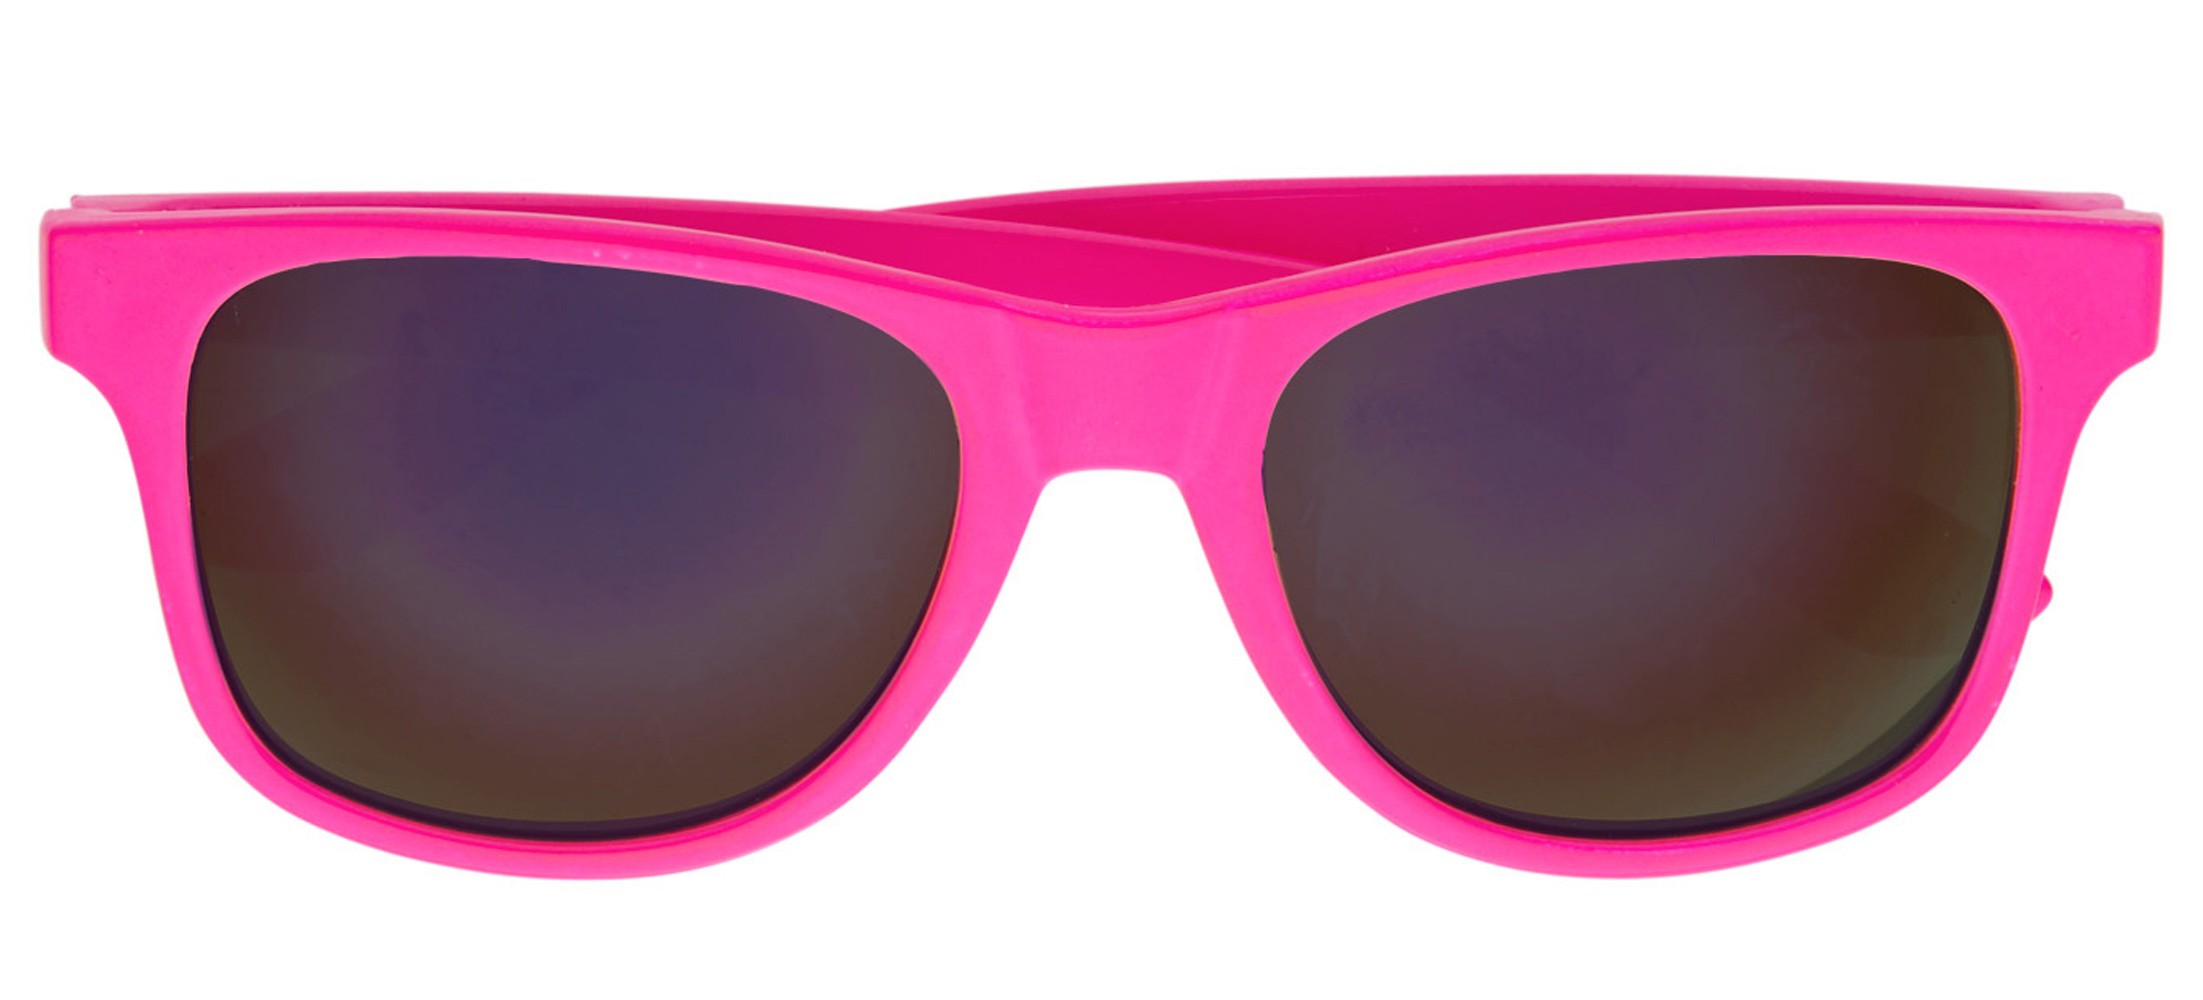 Knallige 80er Jahre Brille pink